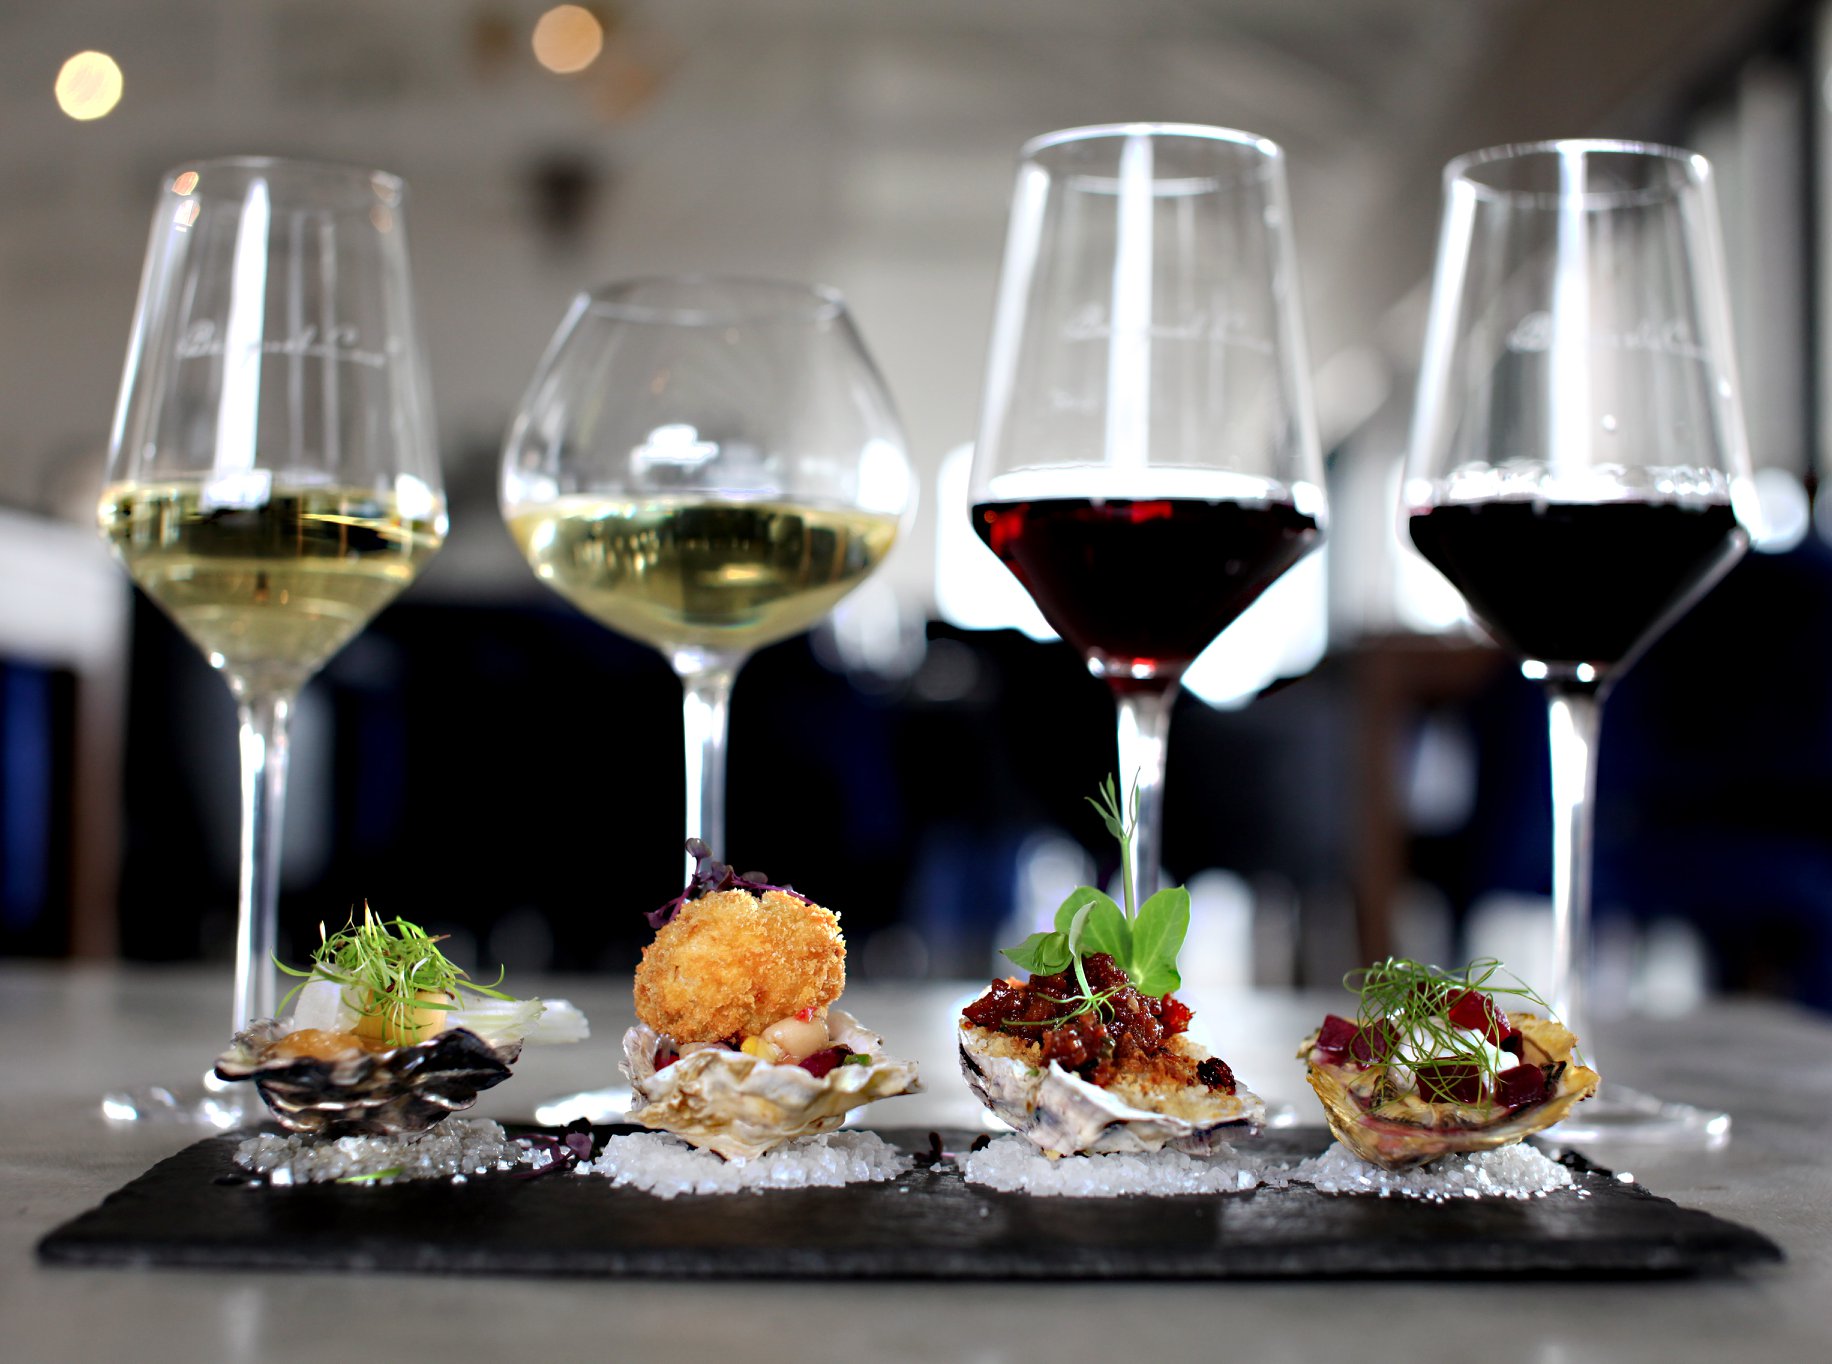 Discover the wonderful food and wine in Hemel-en-Aarde